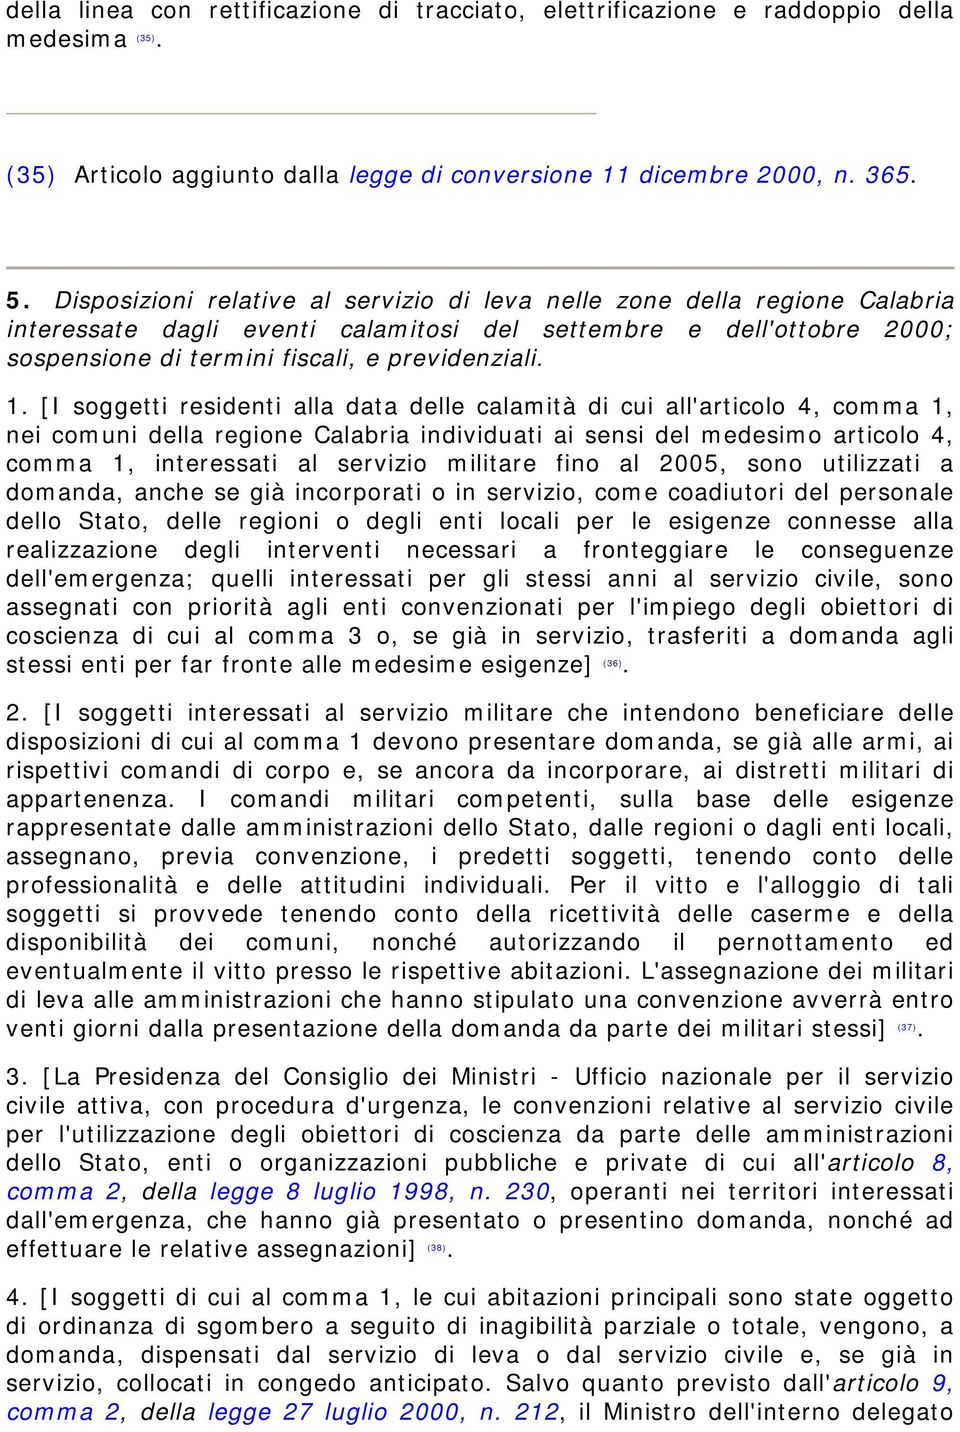 [I soggetti residenti alla data delle calamità di cui all'articolo 4, comma 1, nei comuni della regione Calabria individuati ai sensi del medesimo articolo 4, comma 1, interessati al servizio